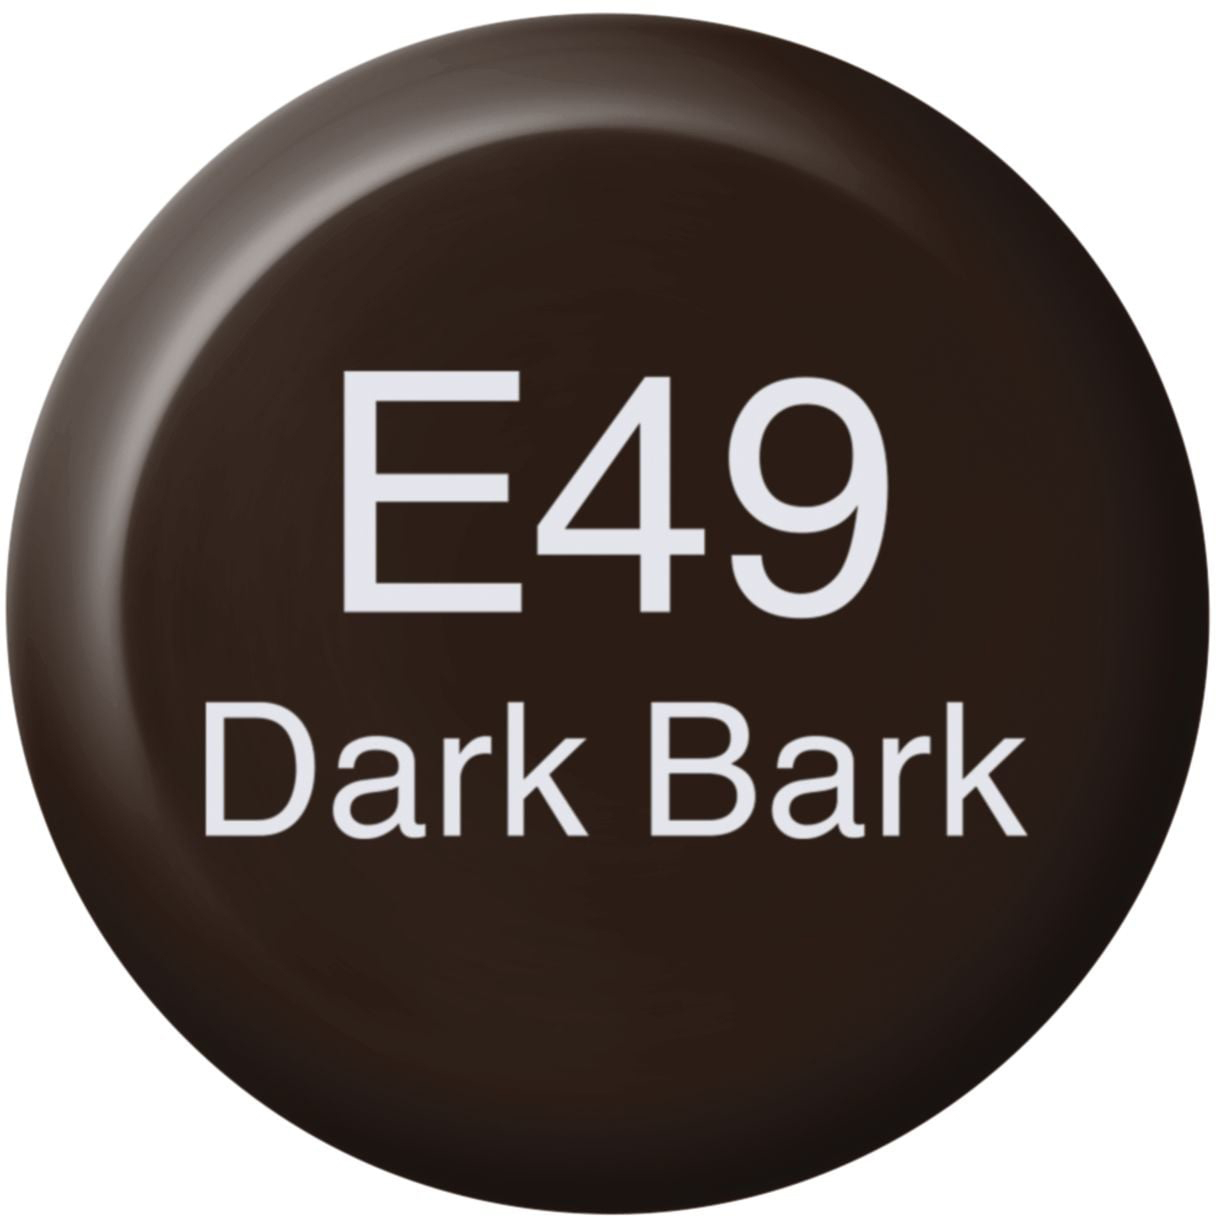 COPIC Ink Refill 21076122 E49 - Dark Bark